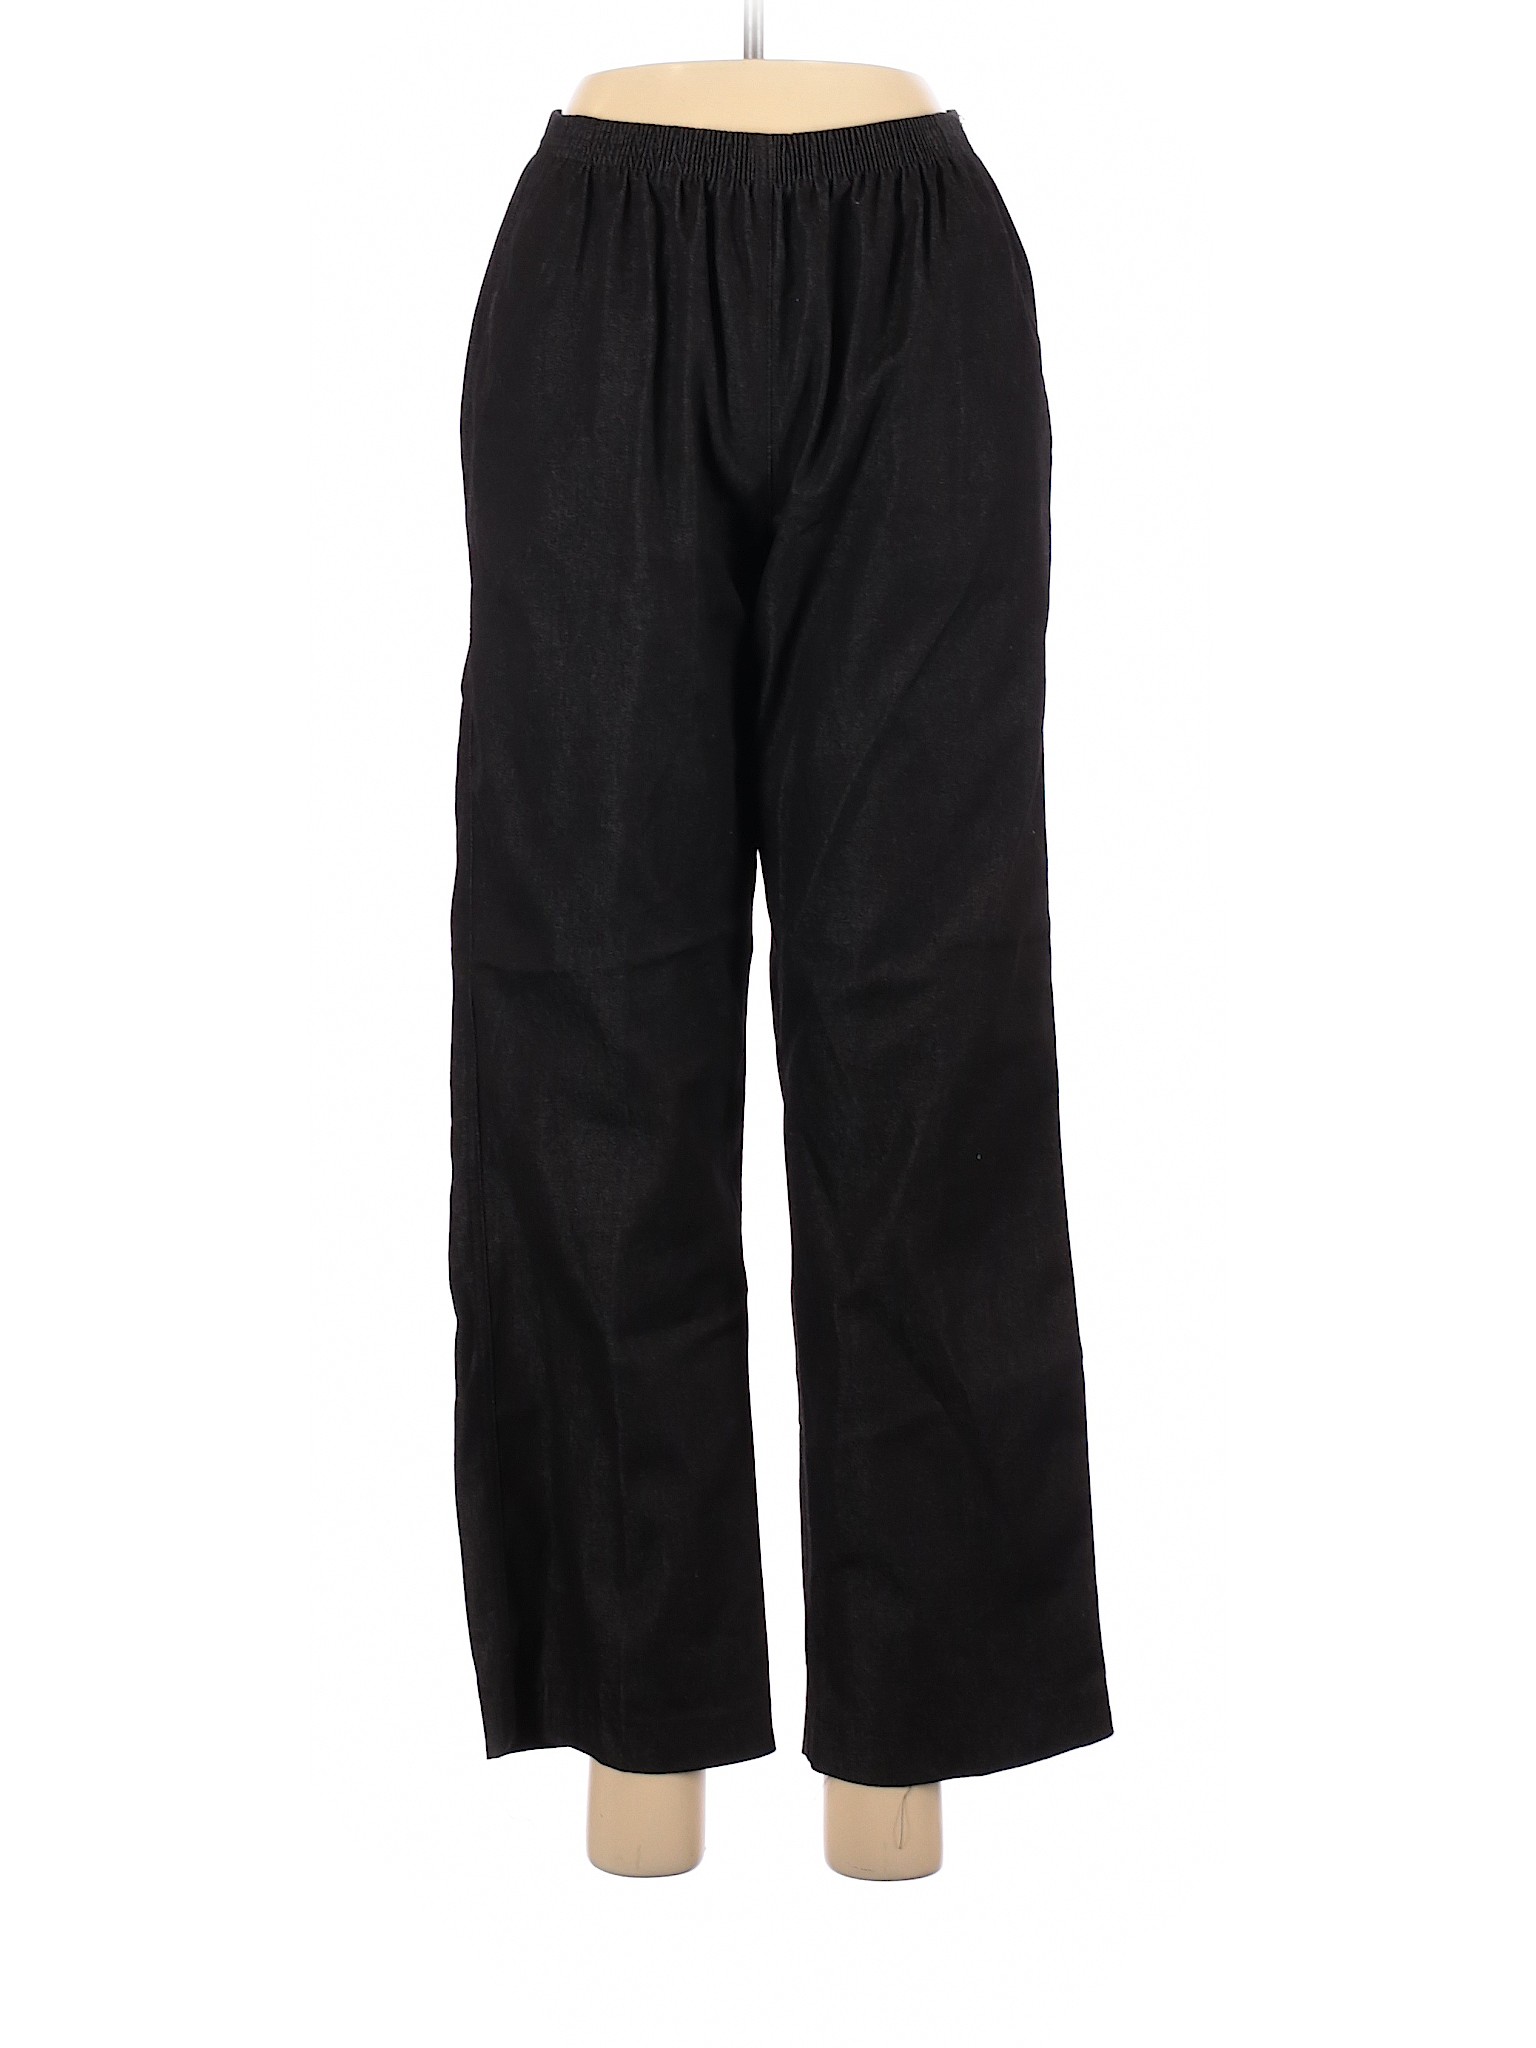 Alfred Dunner Women Black Dress Pants 8 | eBay